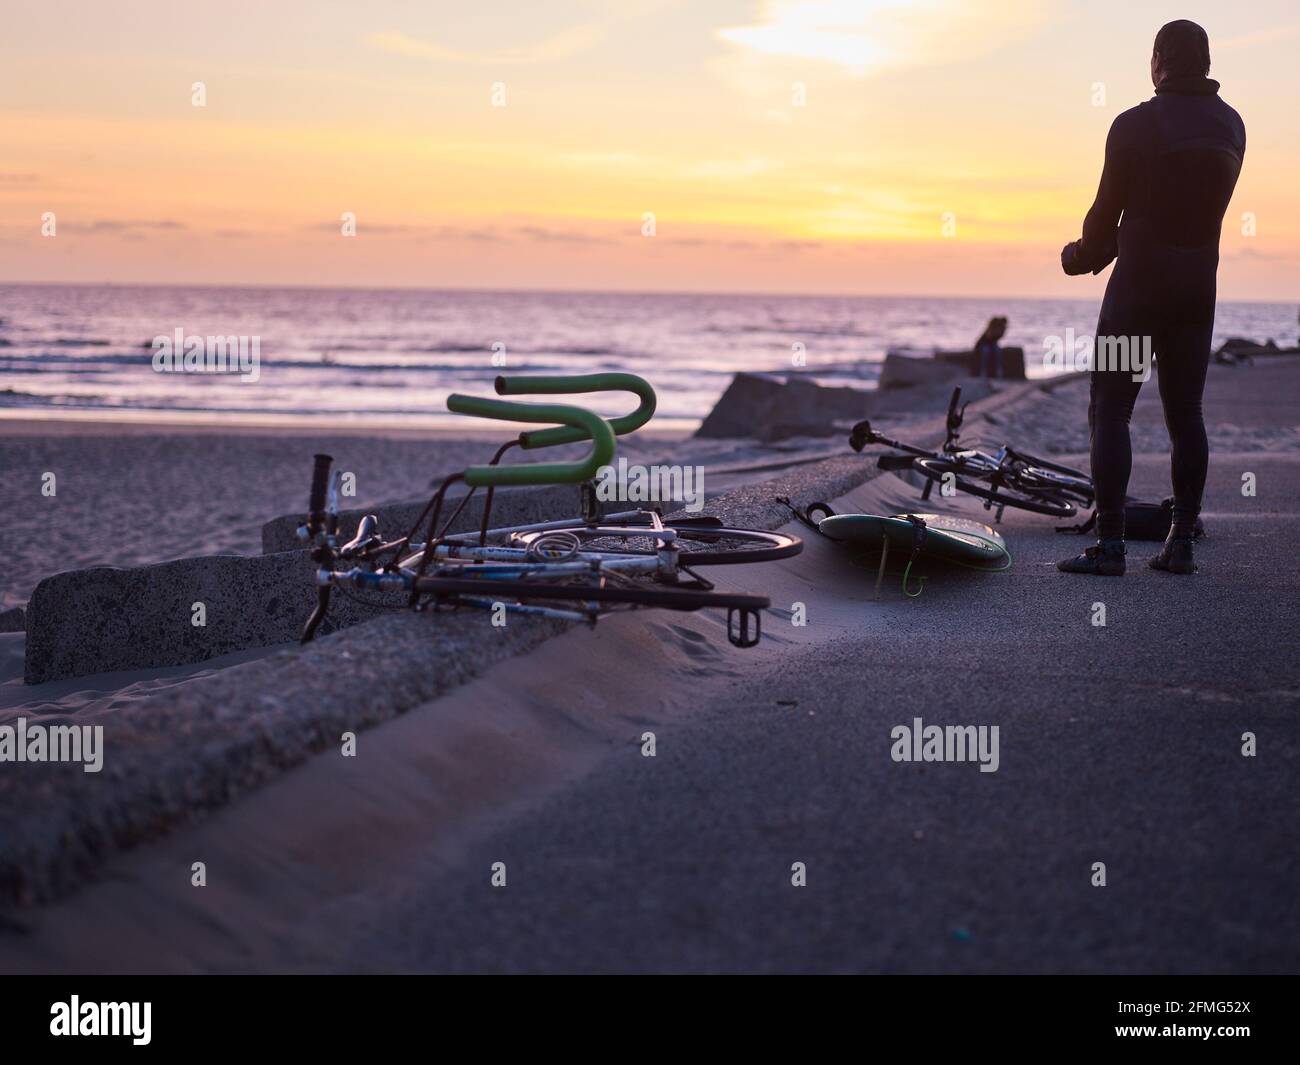 Der Surfer schaut während des Sonnenuntergangs zum Meer, während das Fahrrad zum Transport des Surfbretts neben ihm liegt. Stockfoto